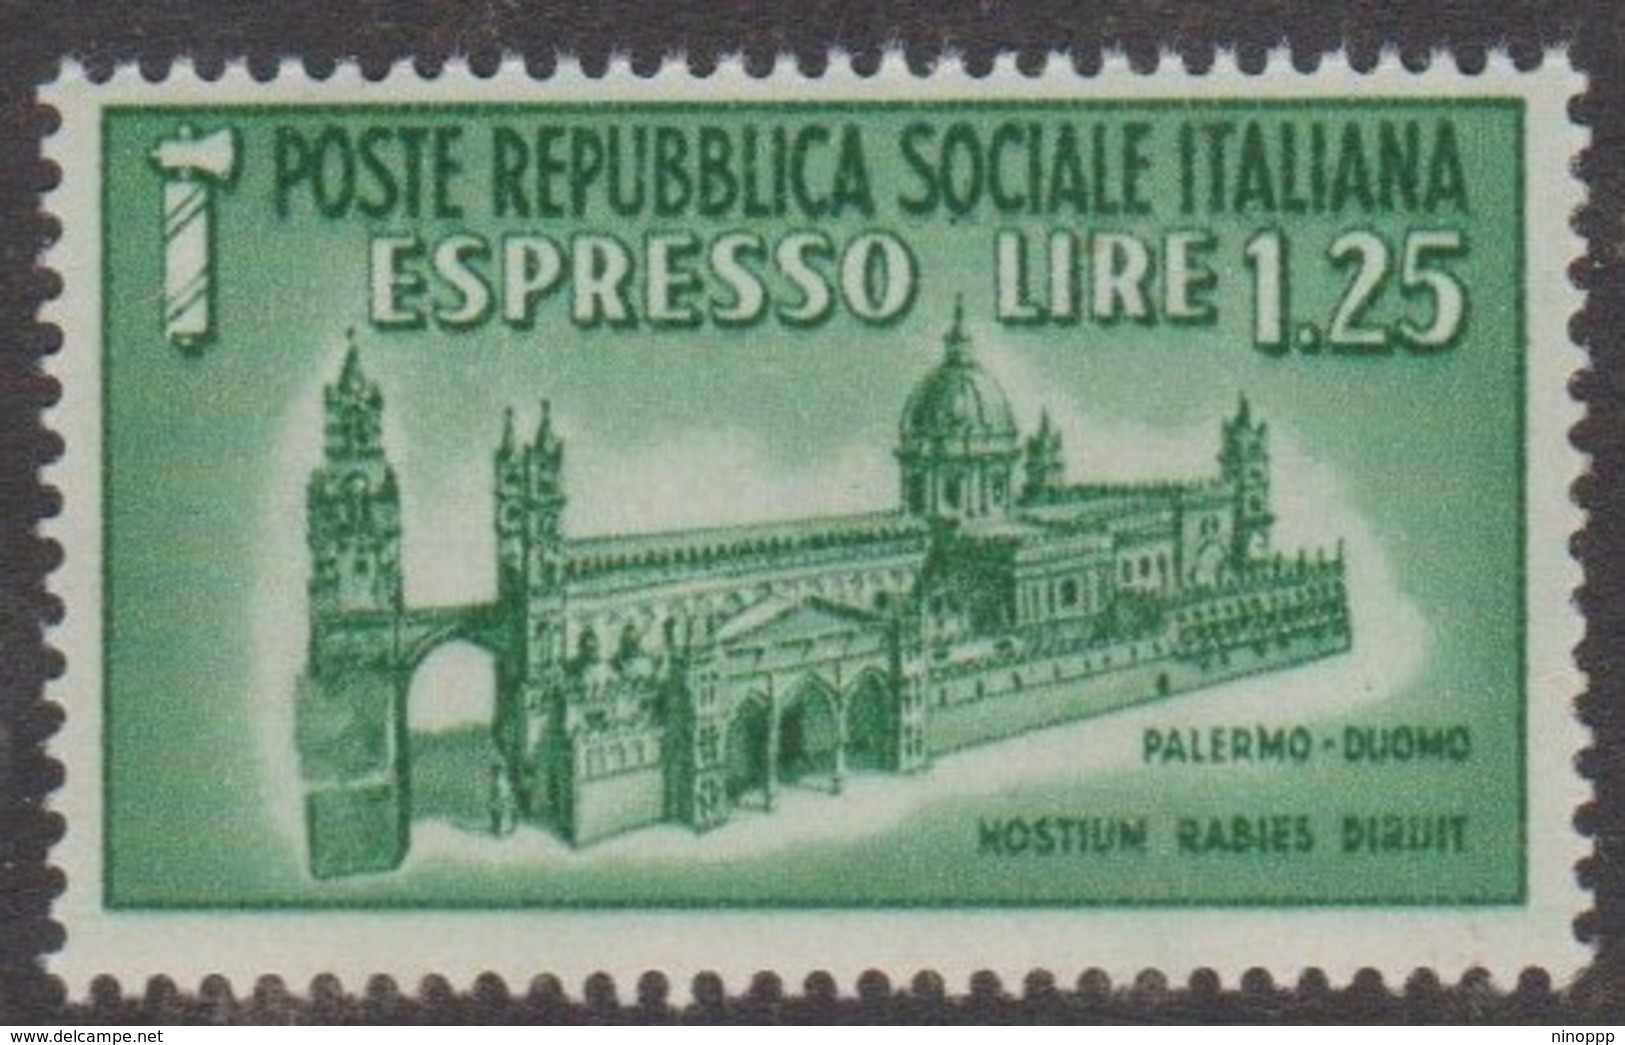 Italy Repubblica Sociale Italiana E 10 1944 Special Delivery Lire 1.25 Green Palerme Dome, Mint Never Hinged, - Posta Espresso